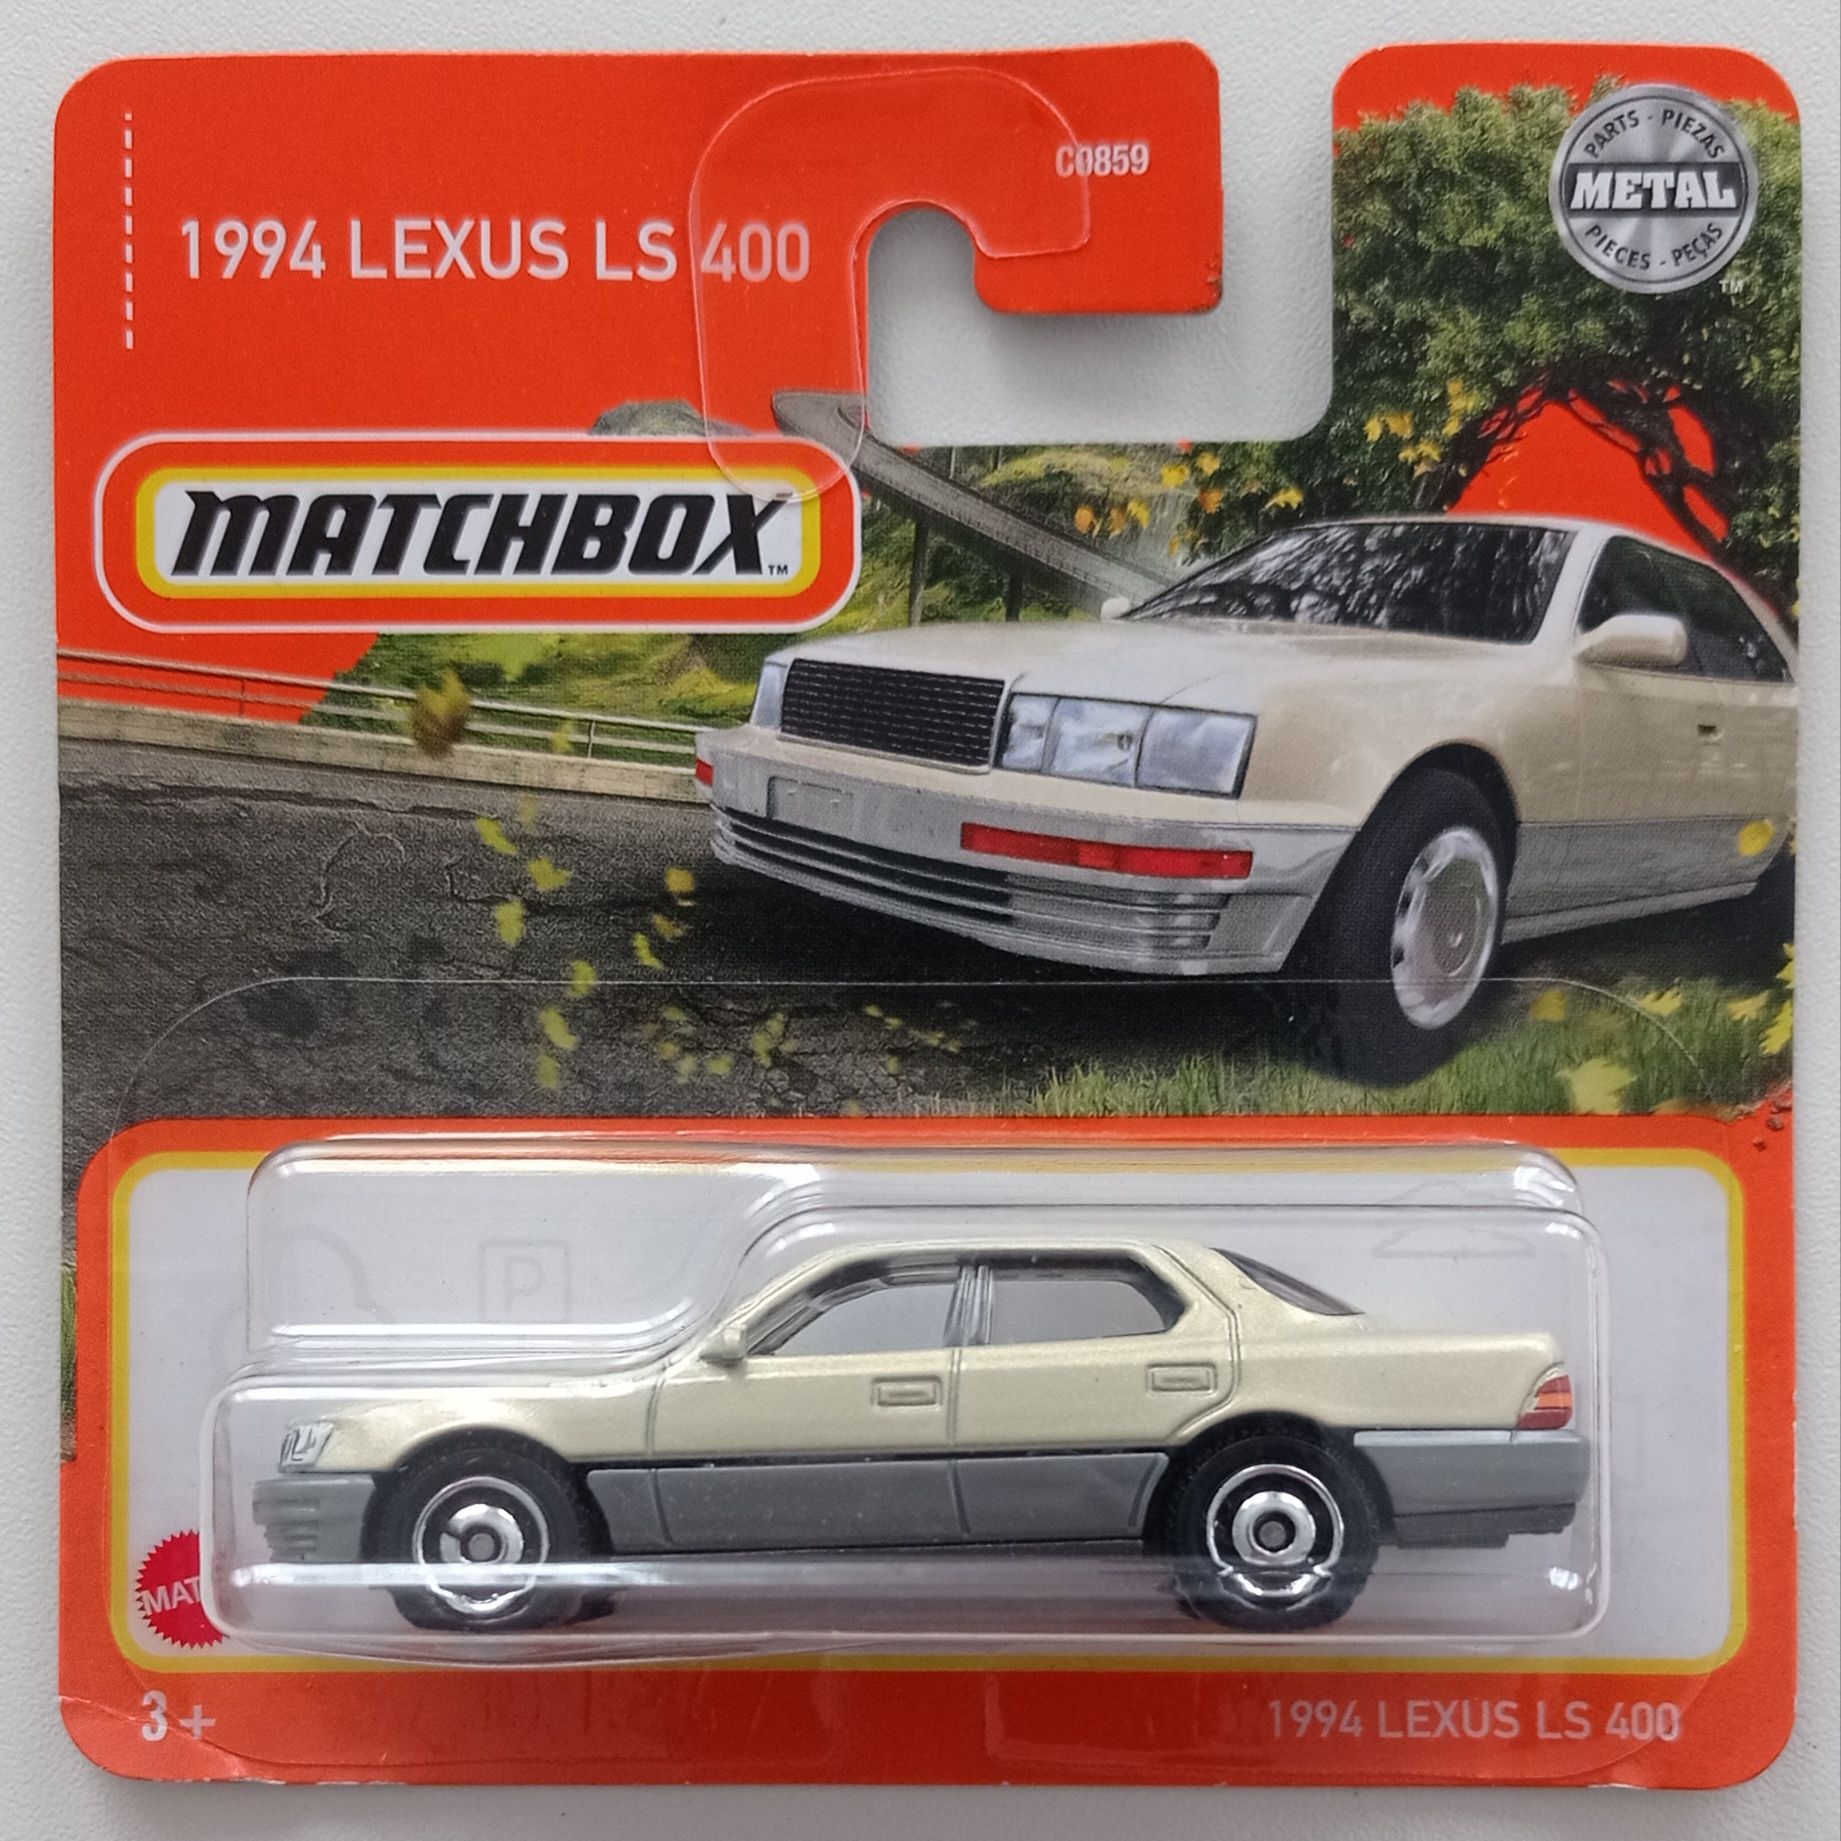 Matchbox 1994 Lexus LS 400